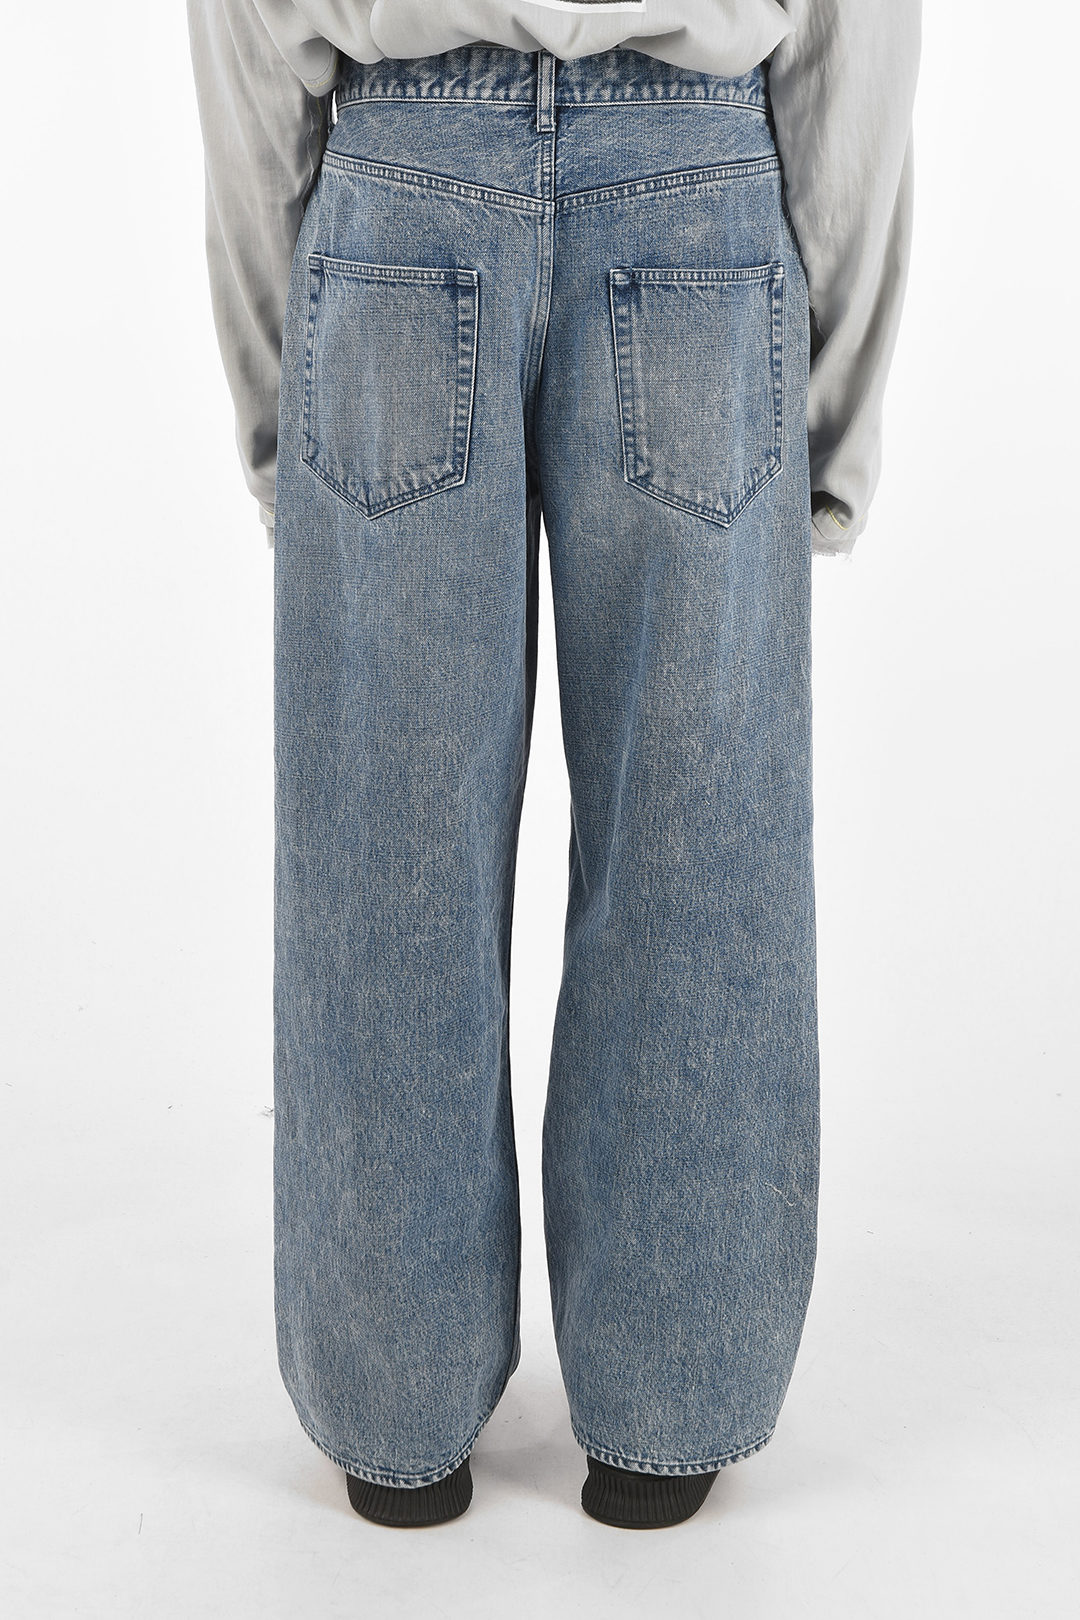 NICK FOUQUET 28cm double pleat wide jeans